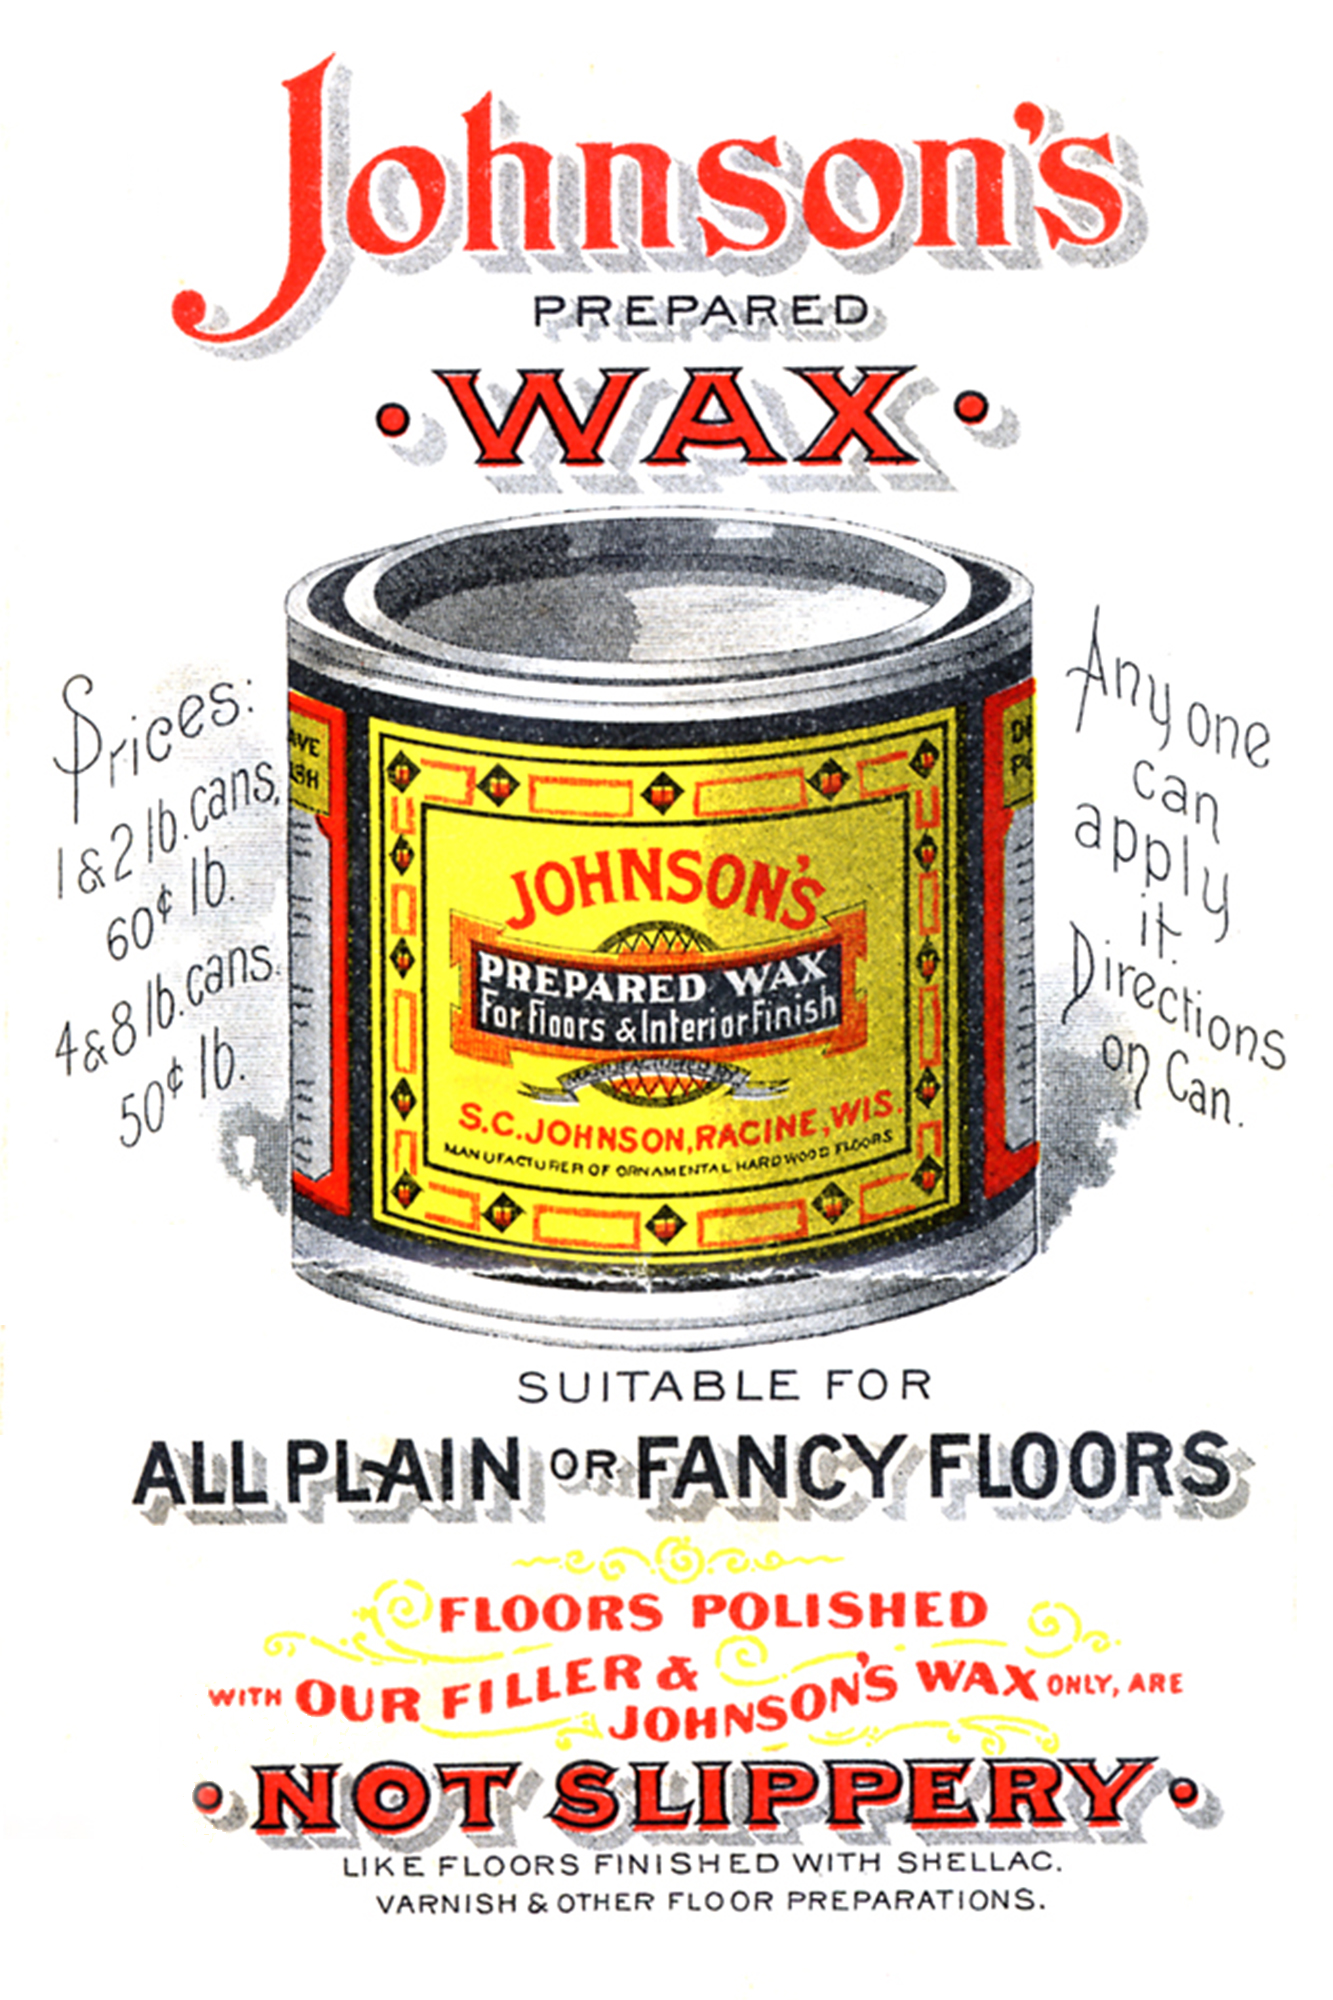 Publicité vintage pour la cire Prepared Wax de Johnson, en 1898